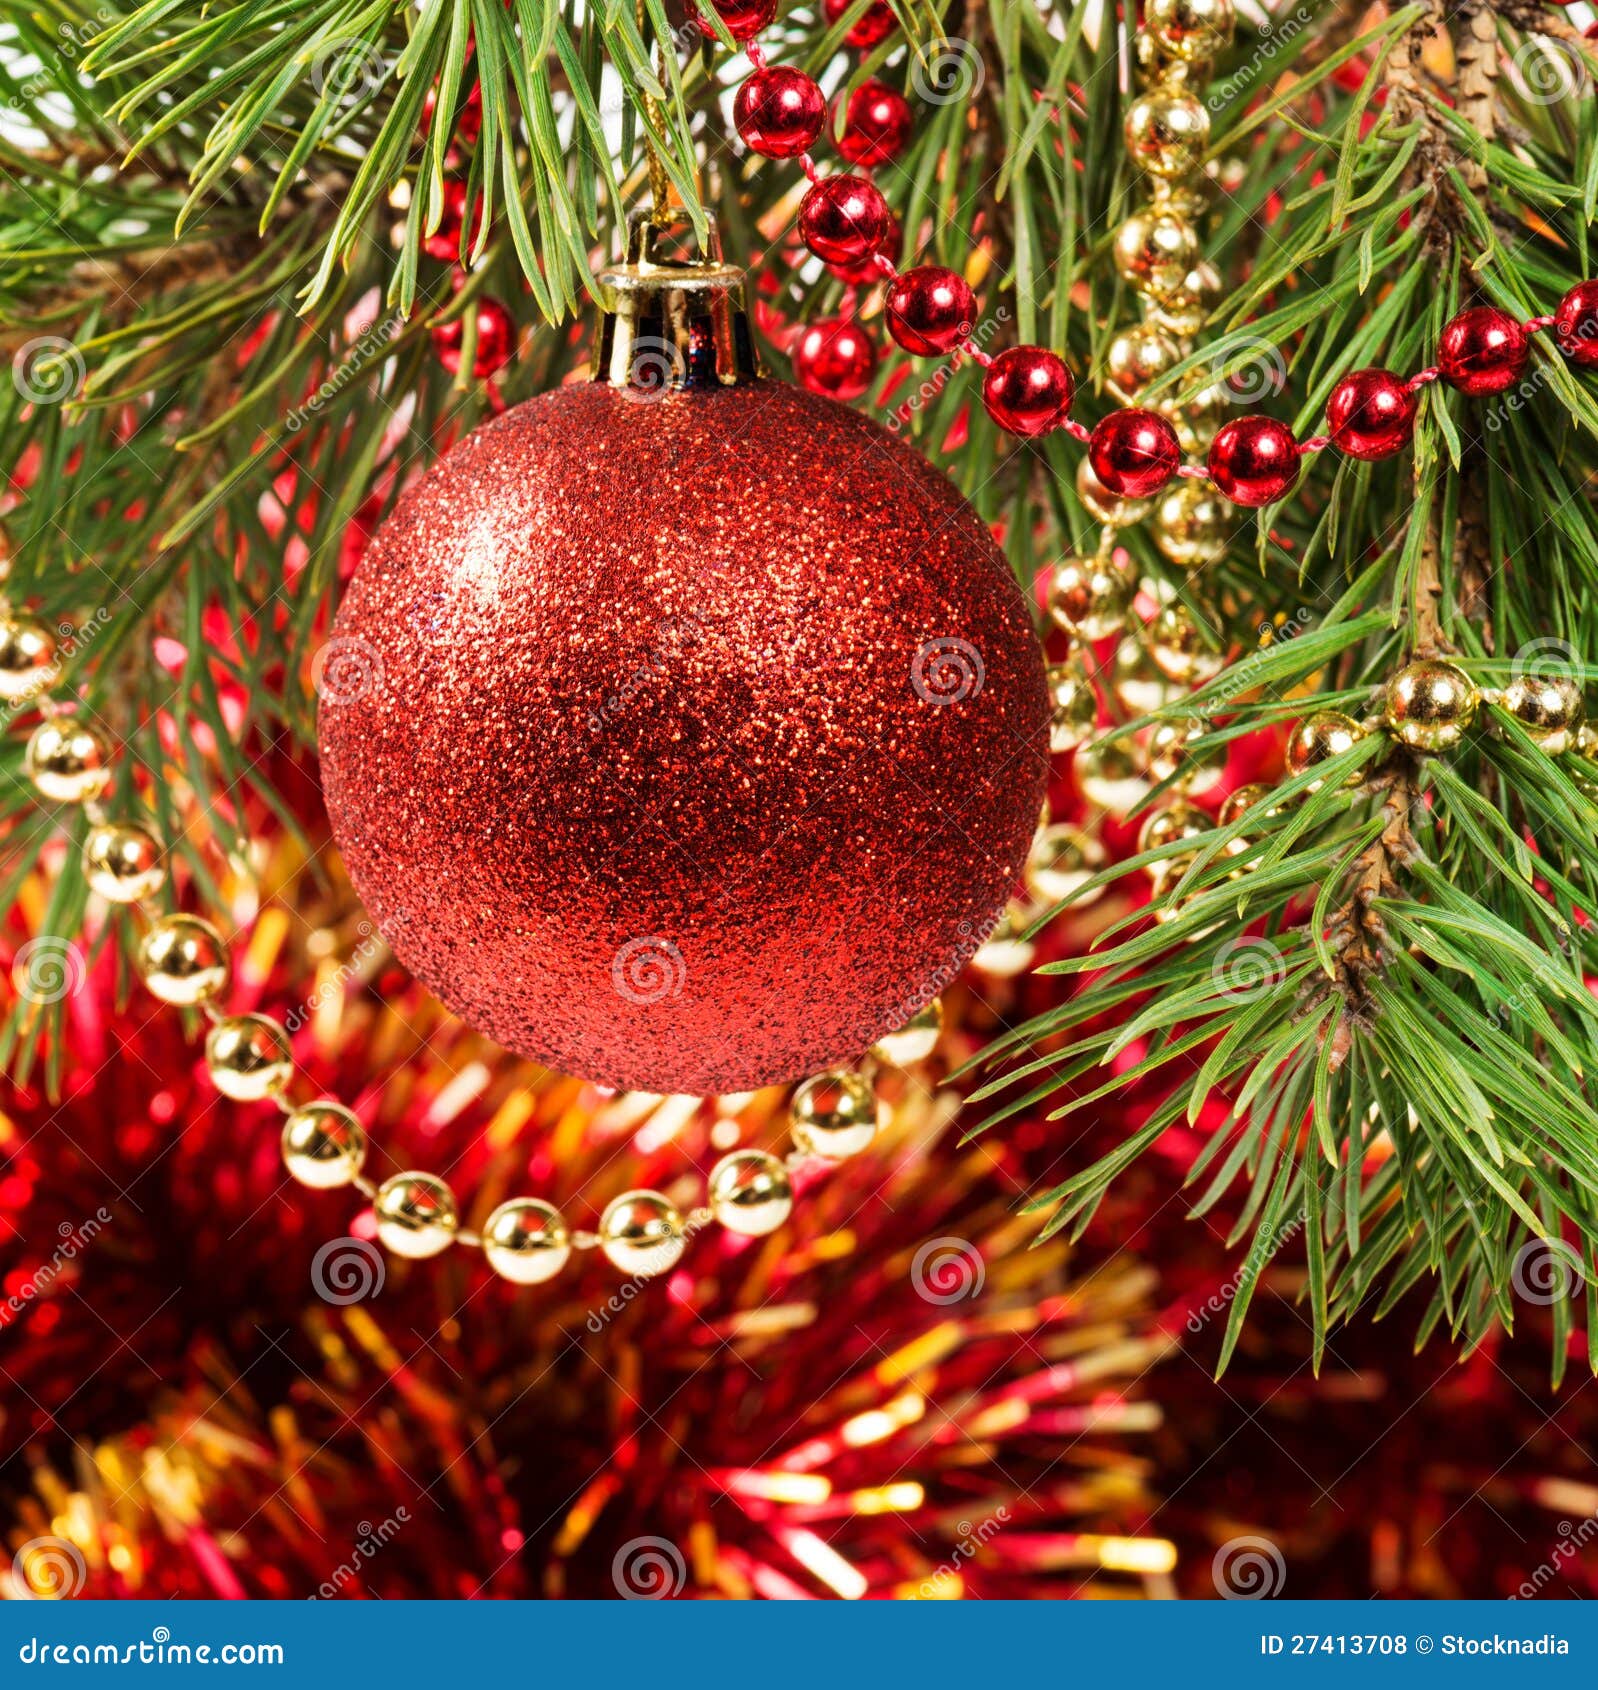 Christmas Ball on a Christmas Tree Stock Photo - Image of pine, holiday ...